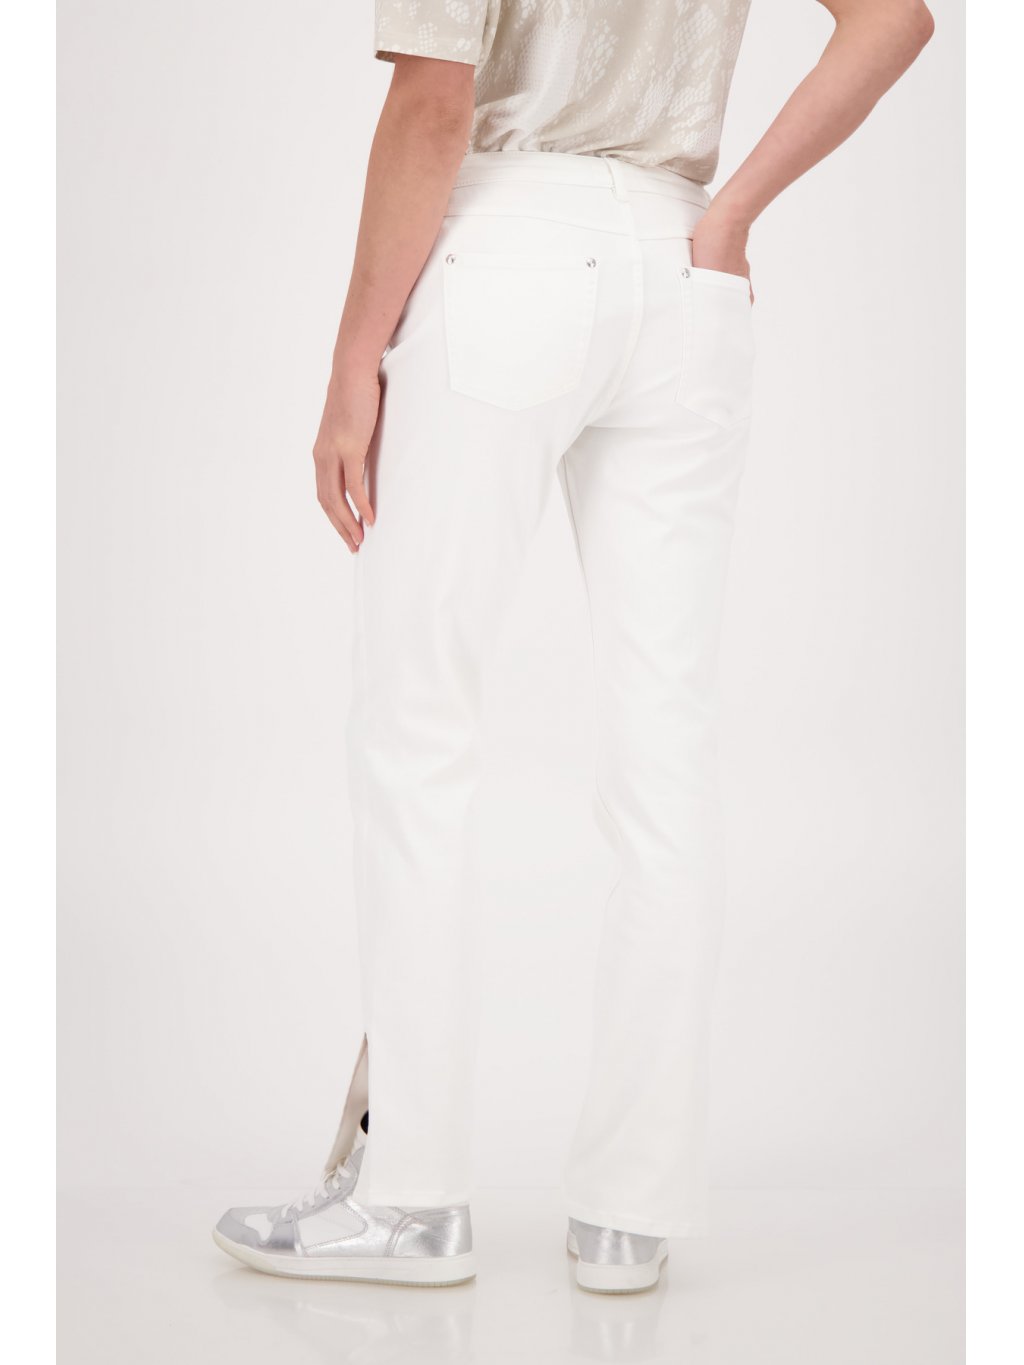 Kalhoty Monari 7566 jemné bílé s kamínky džíny